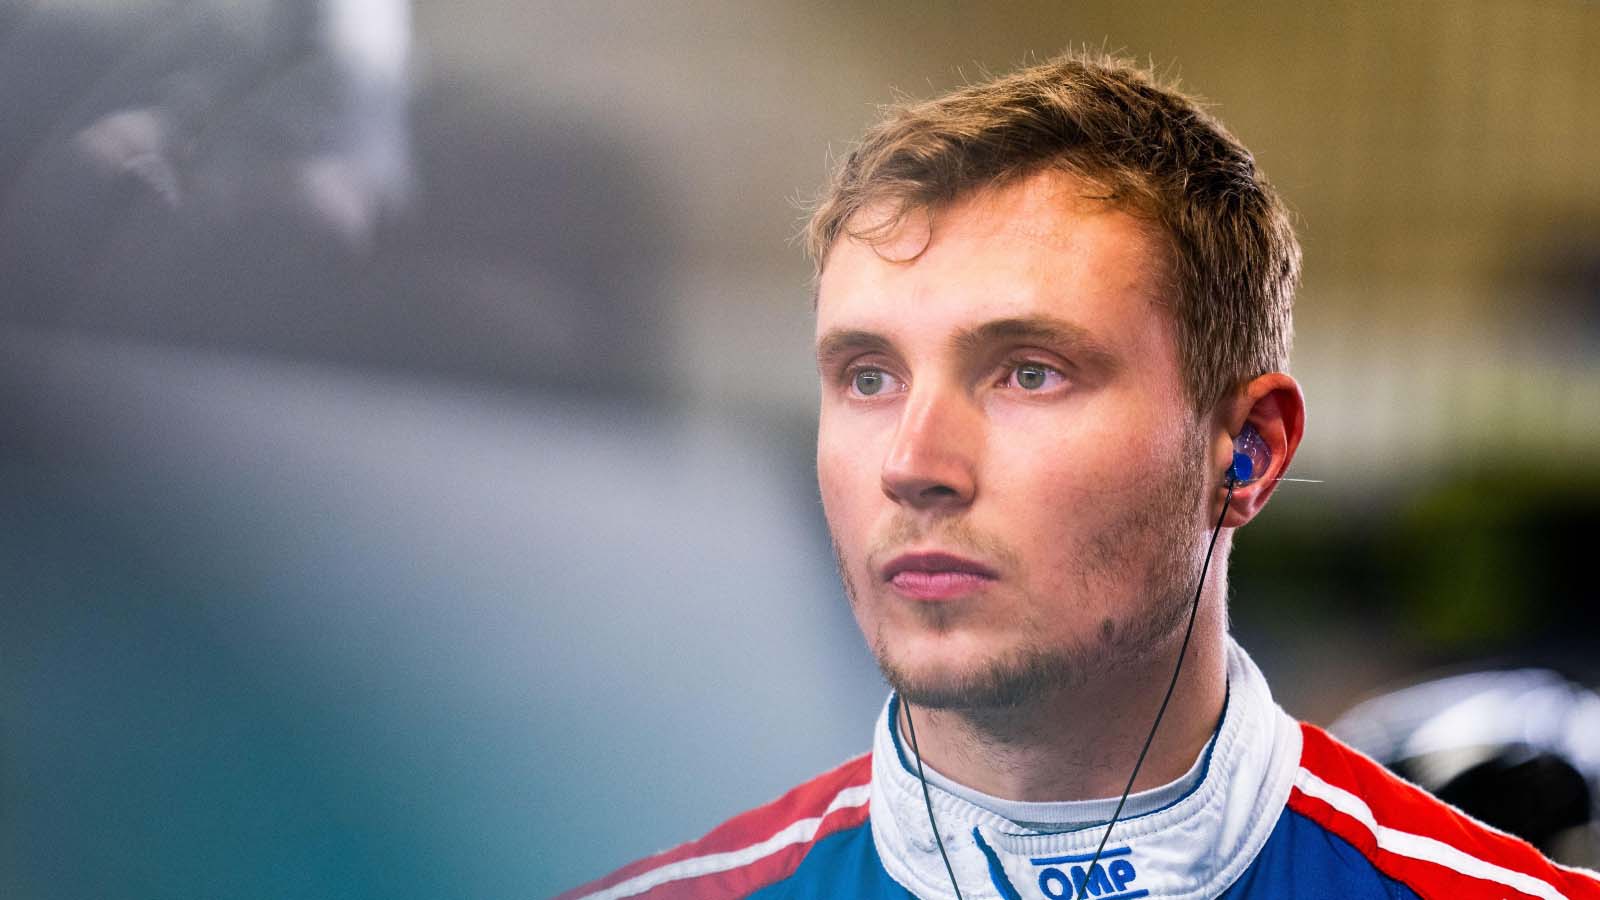 Sergey Sirotkin in the garage. Le Mans June 2019.